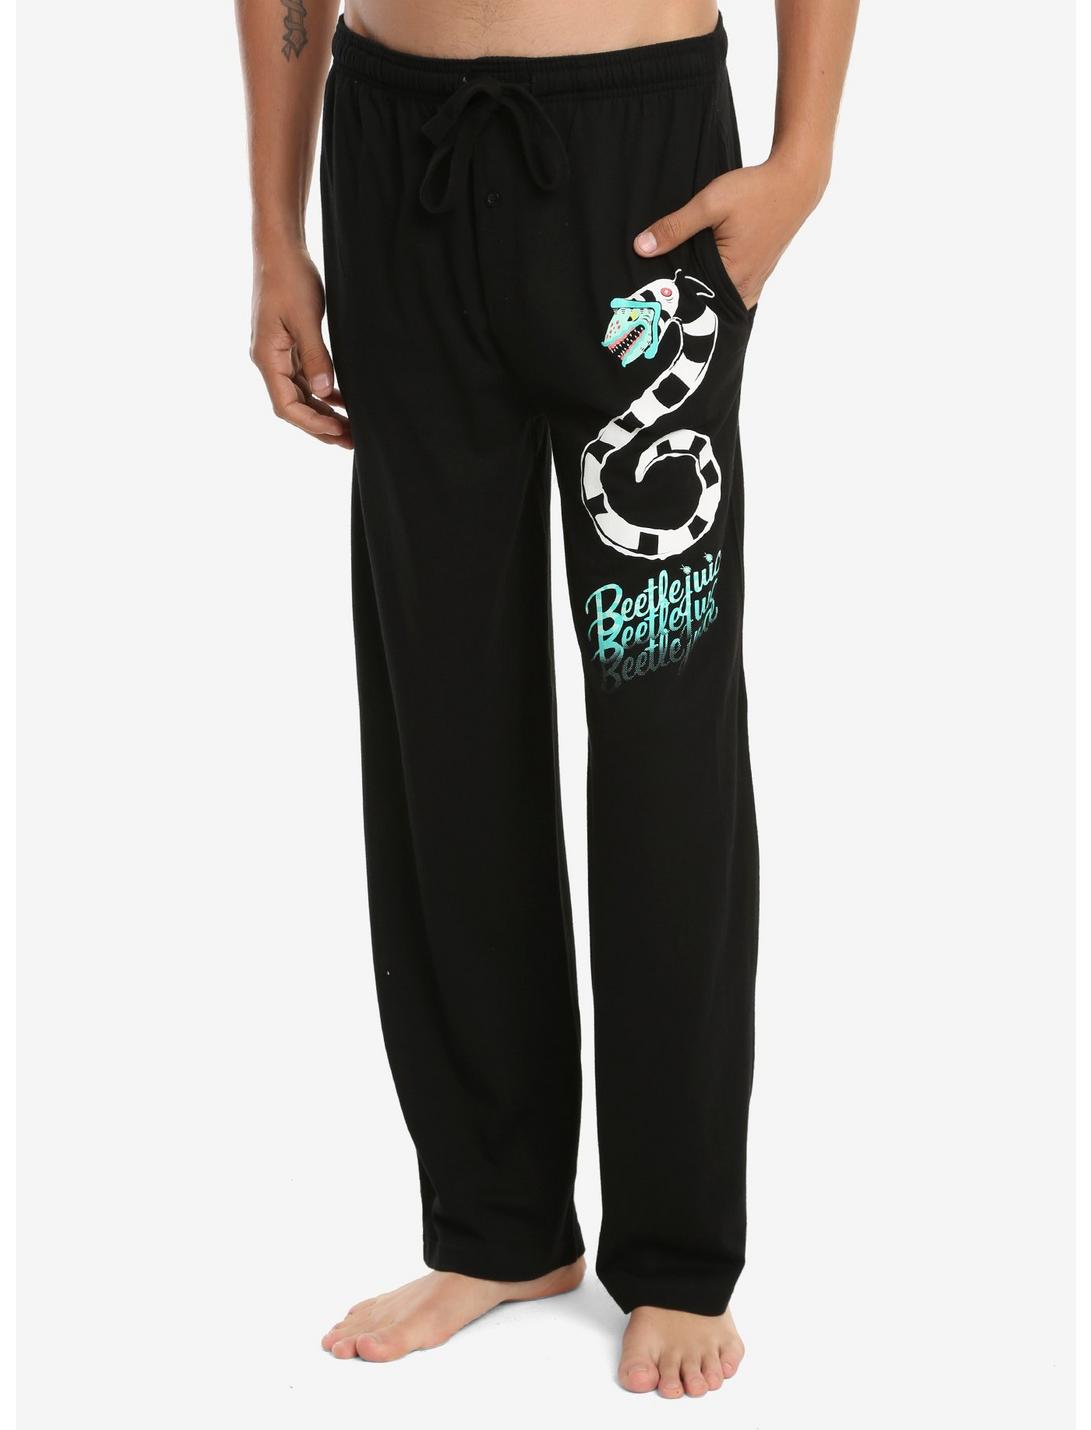 Beetlejuice Sandworm Guys Pajama Pants, BLACK, hi-res